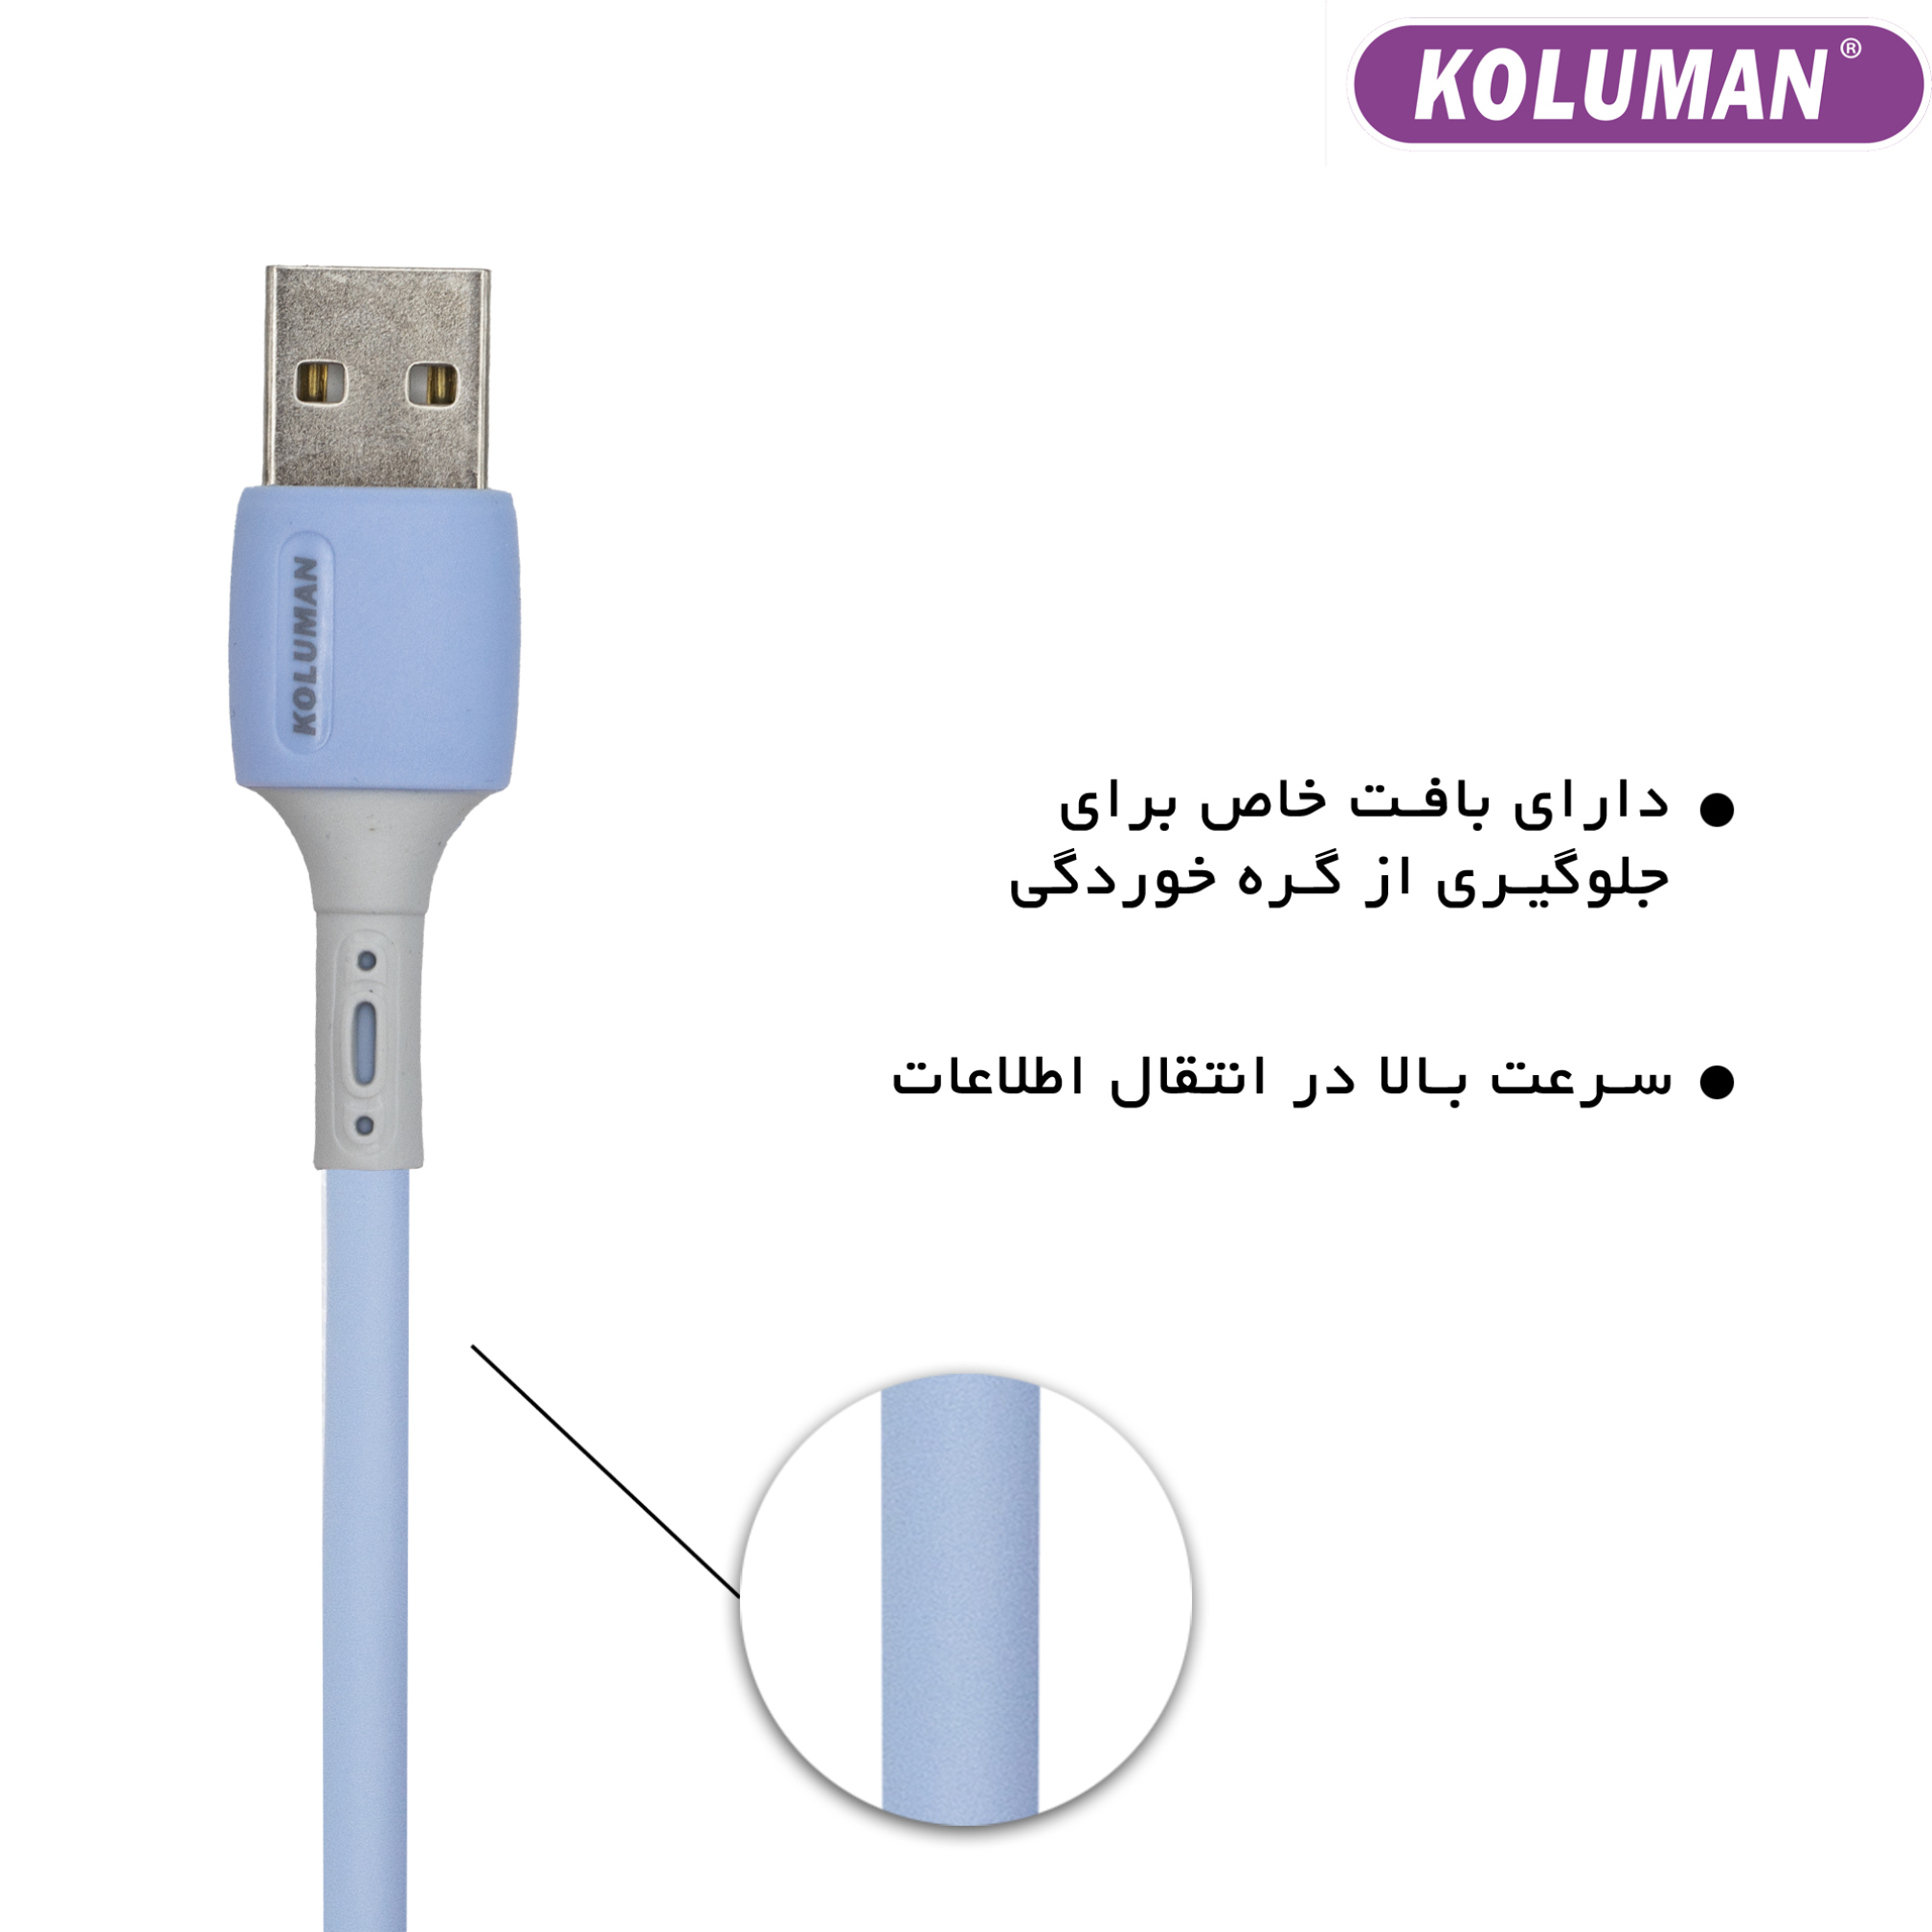 کابل تبدیل USB به لایتنینگ کلومن مدل DK - 62 طول 1 متر | فروشگاه ...